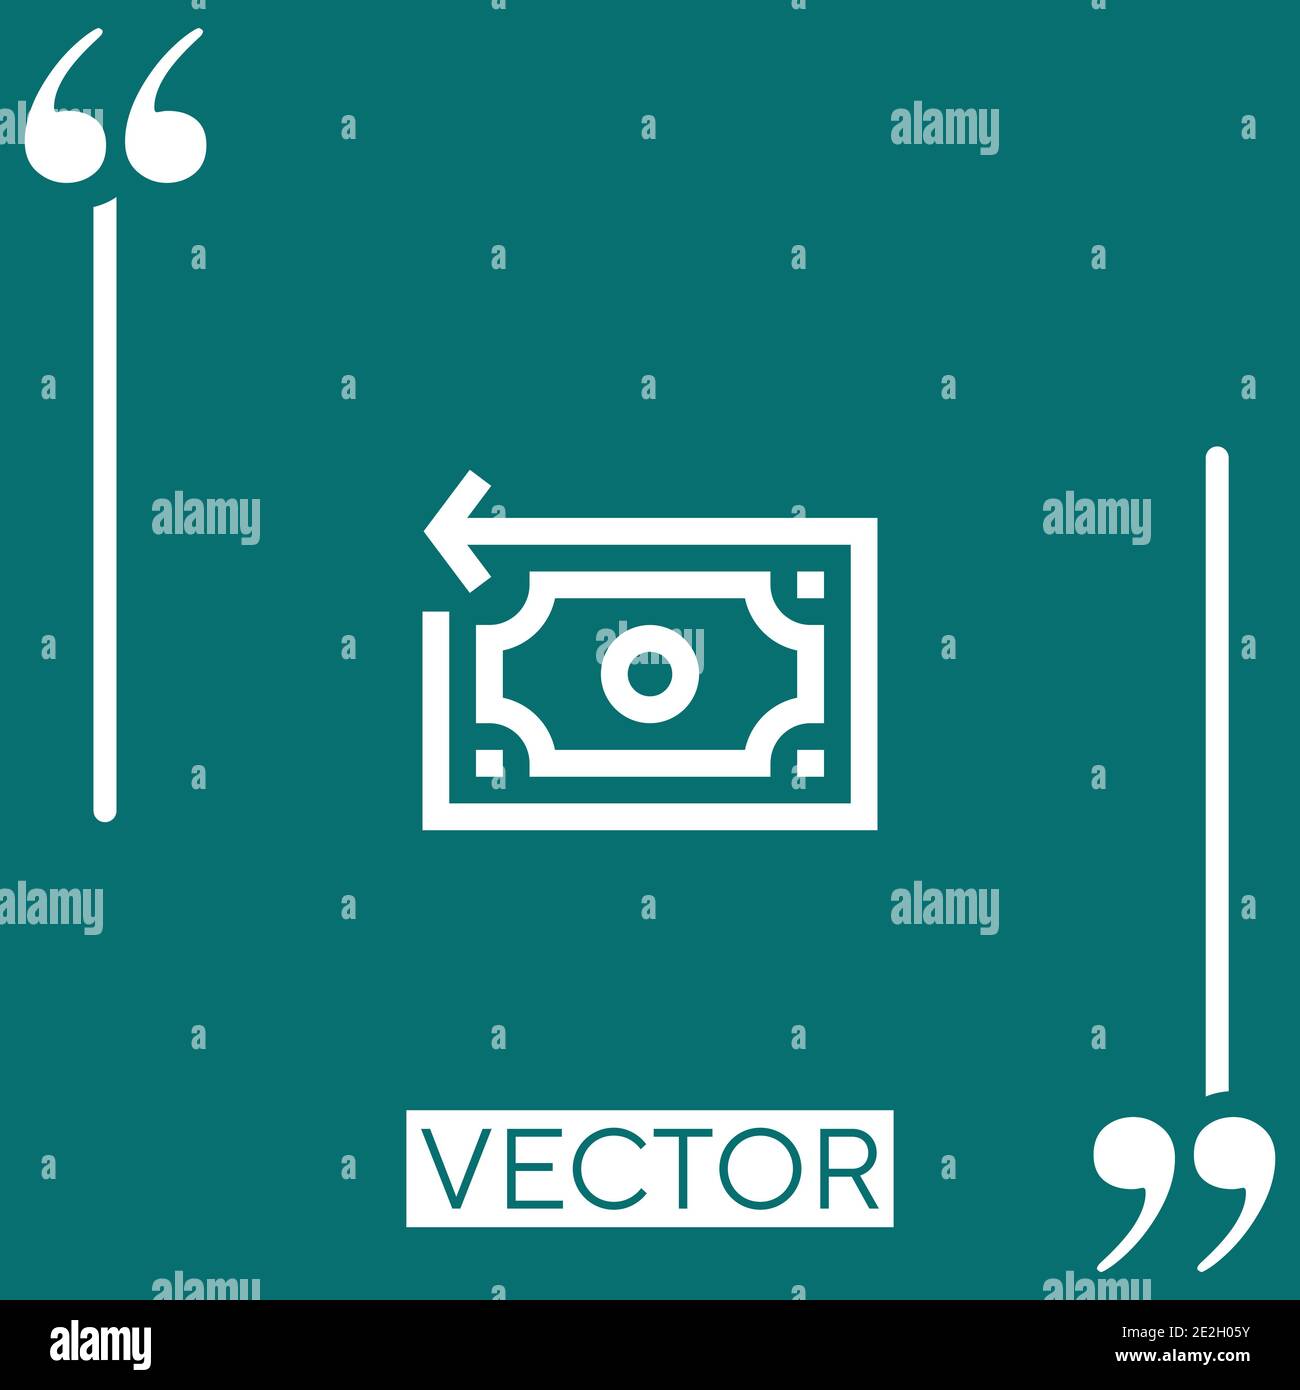 refund vector icon Linear icon. Editable stroke line Stock Vector